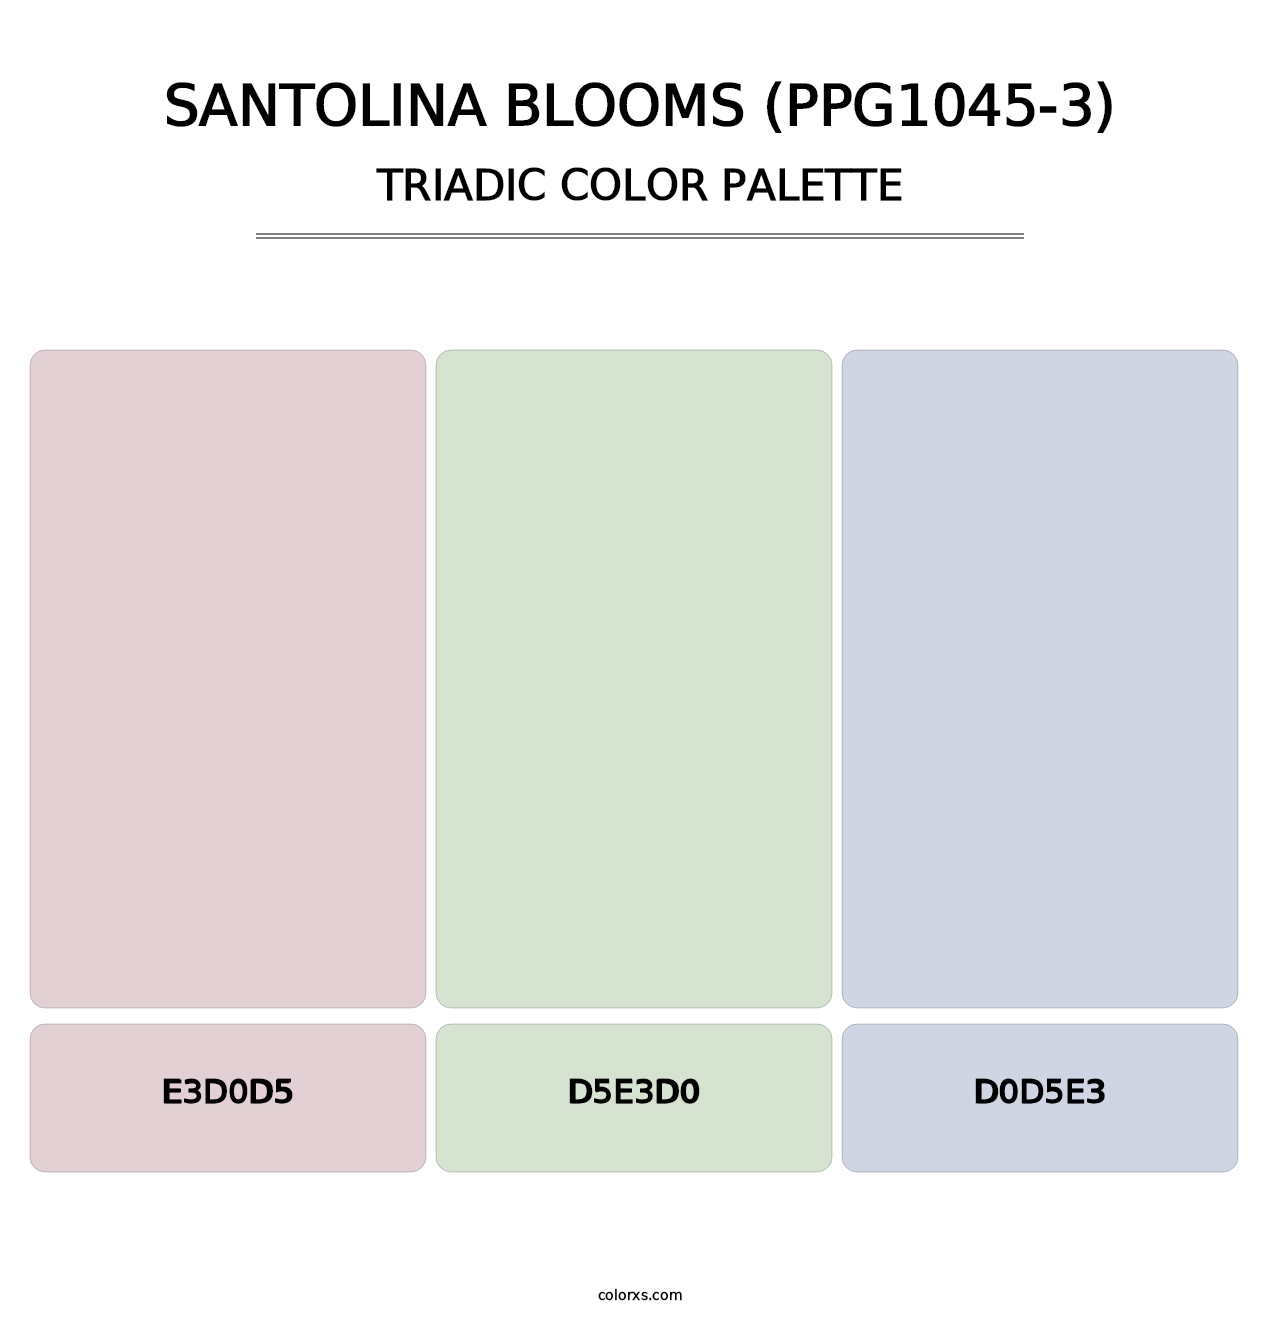 Santolina Blooms (PPG1045-3) - Triadic Color Palette